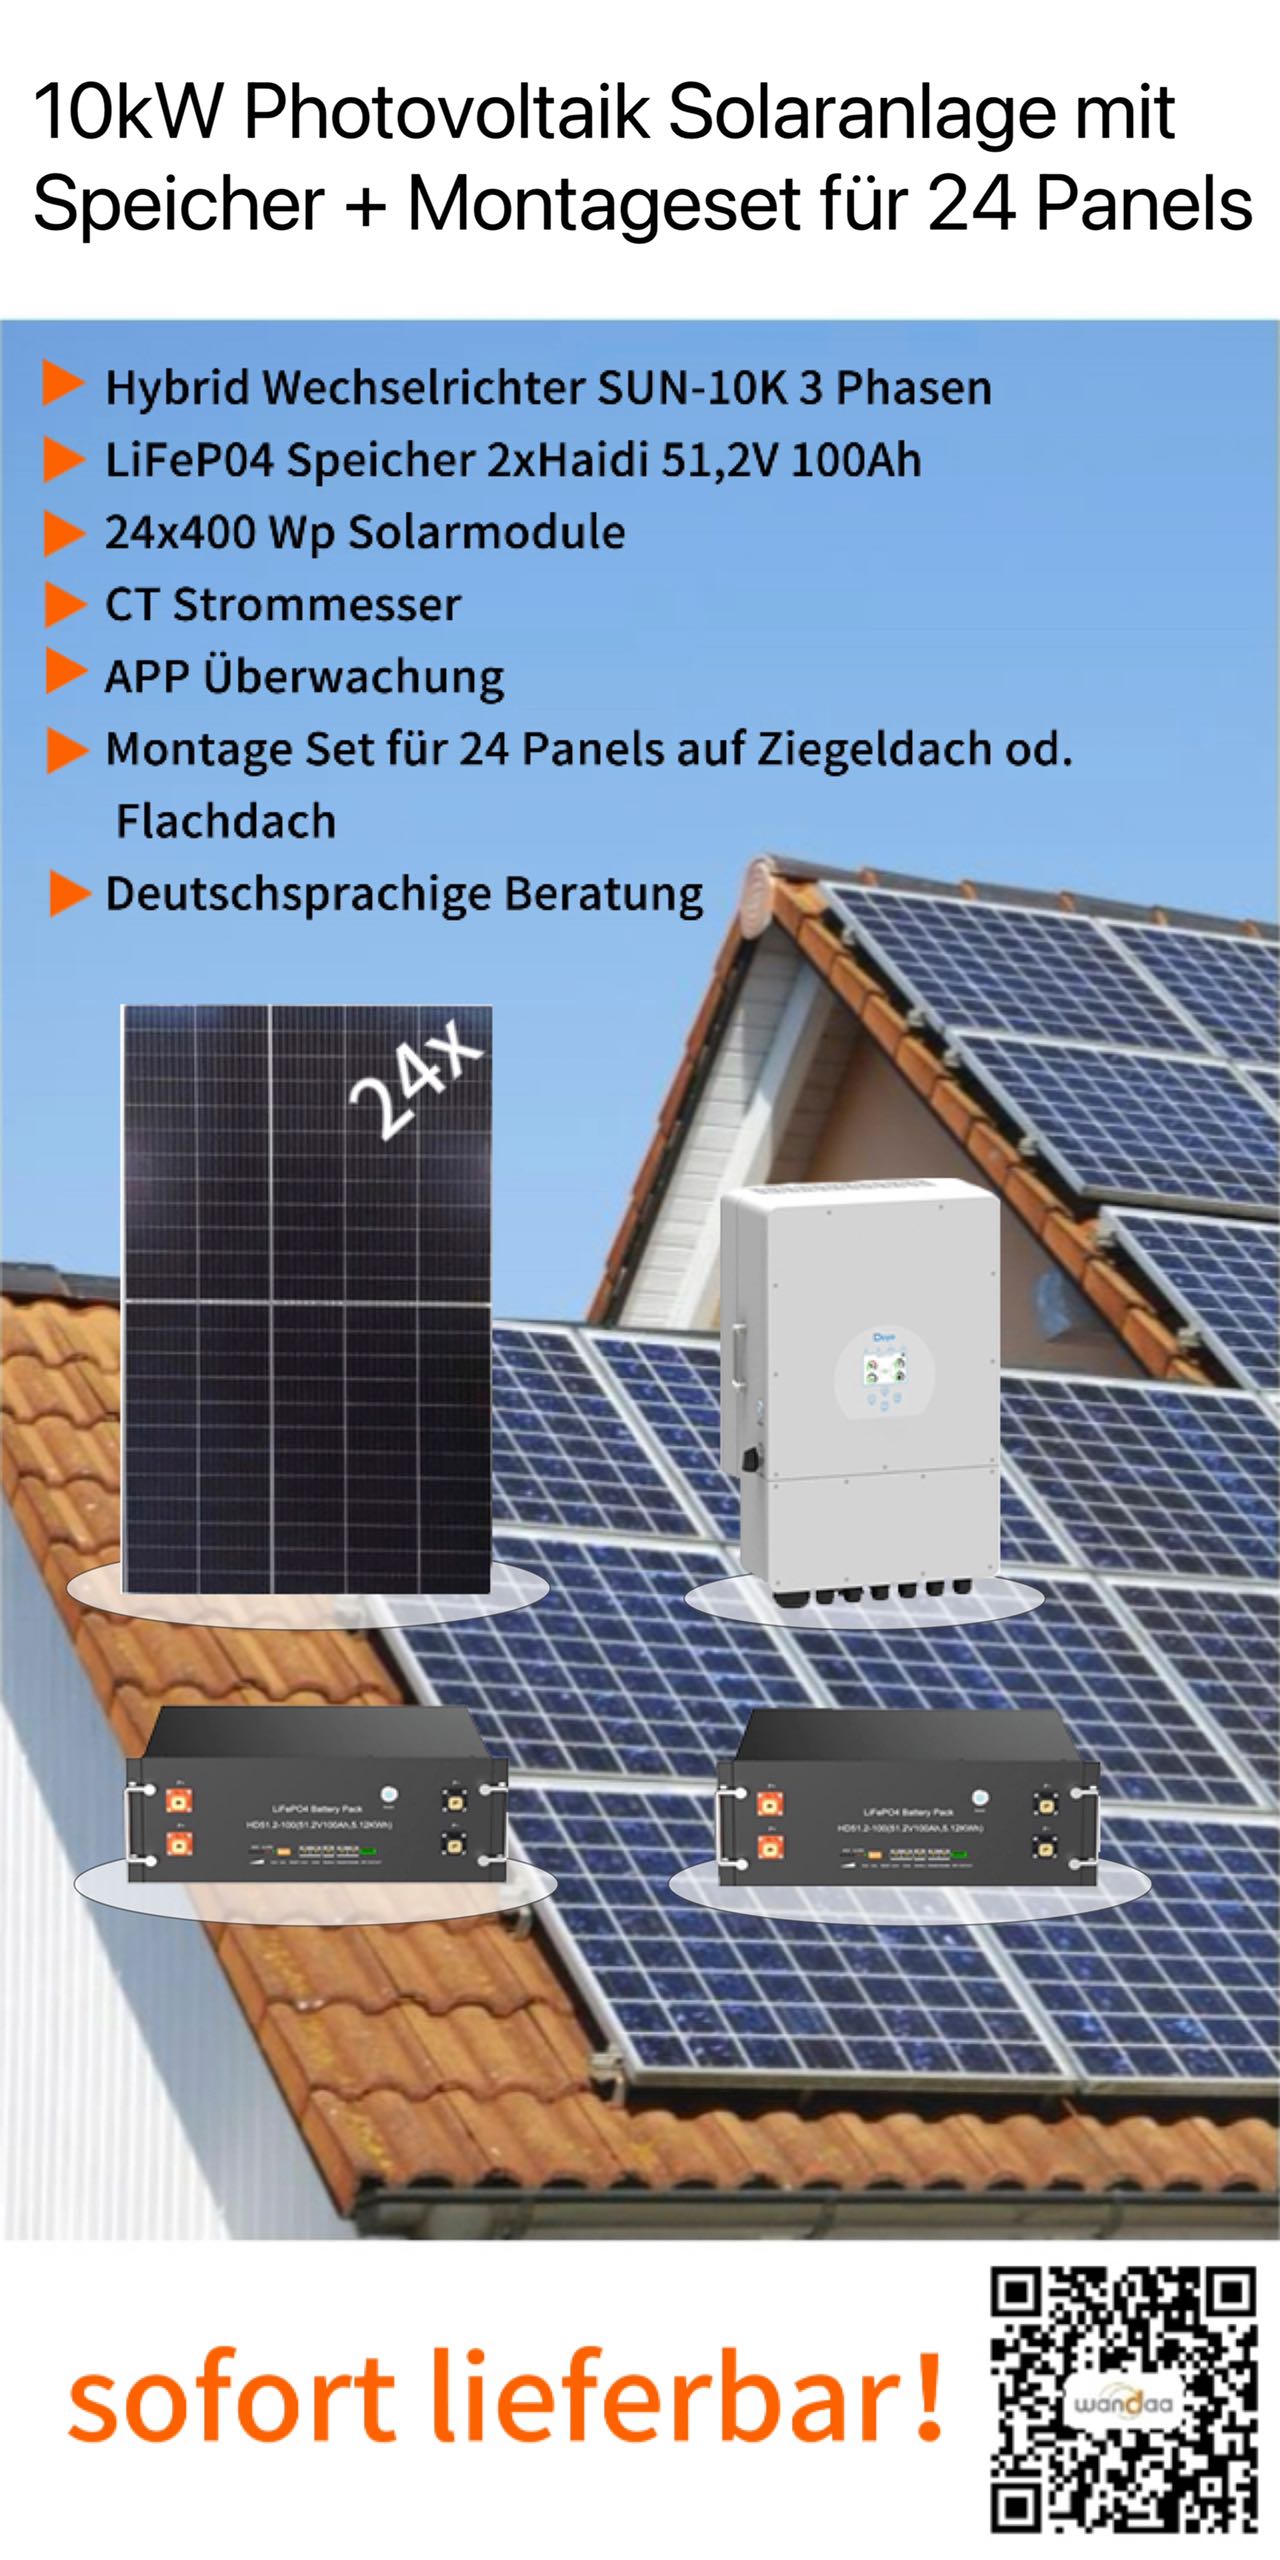 10kWp Photovoltaik Solaranlage 24x400Wp 10kWh LiFePO4 Speicher und 3 Phasen  10kW Hybrid Wechselrichter + Montageset für 24 Panels auf Ziegeldach oder  Flachdach - Wandaa